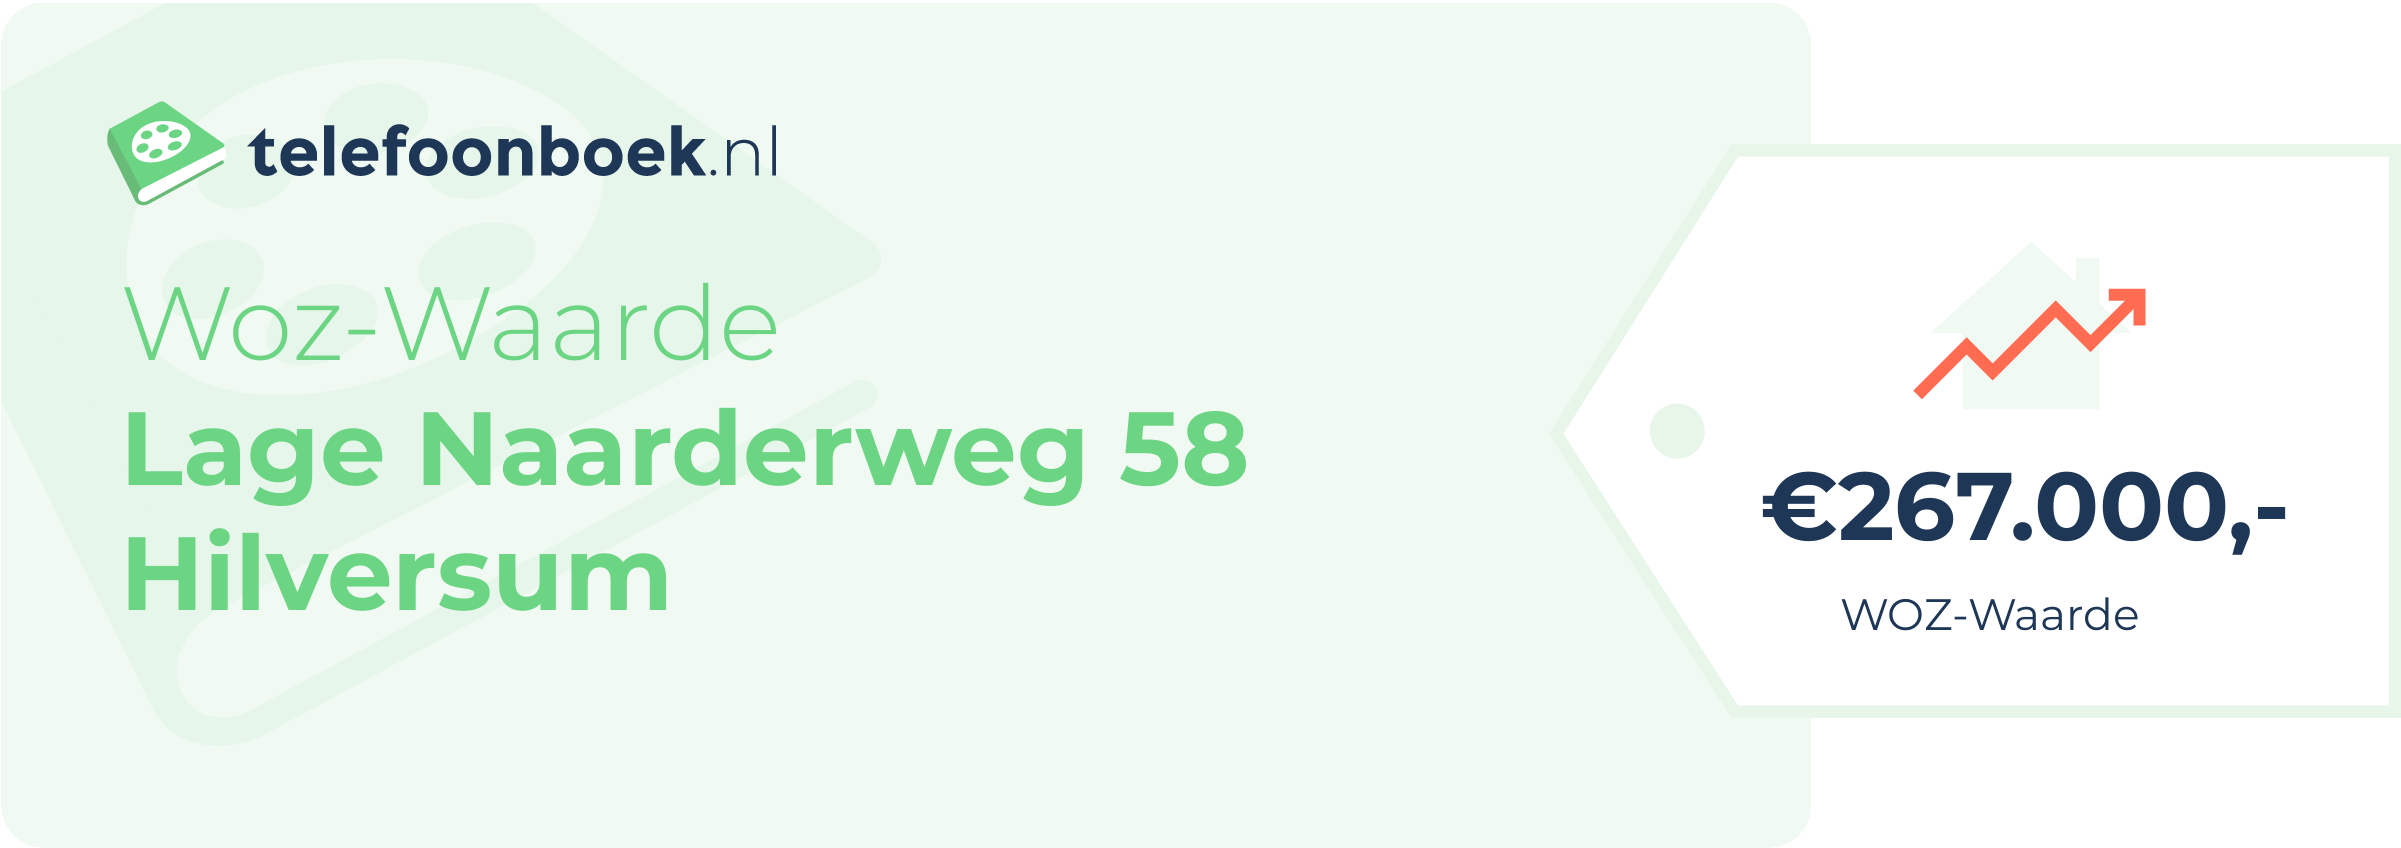 WOZ-waarde Lage Naarderweg 58 Hilversum